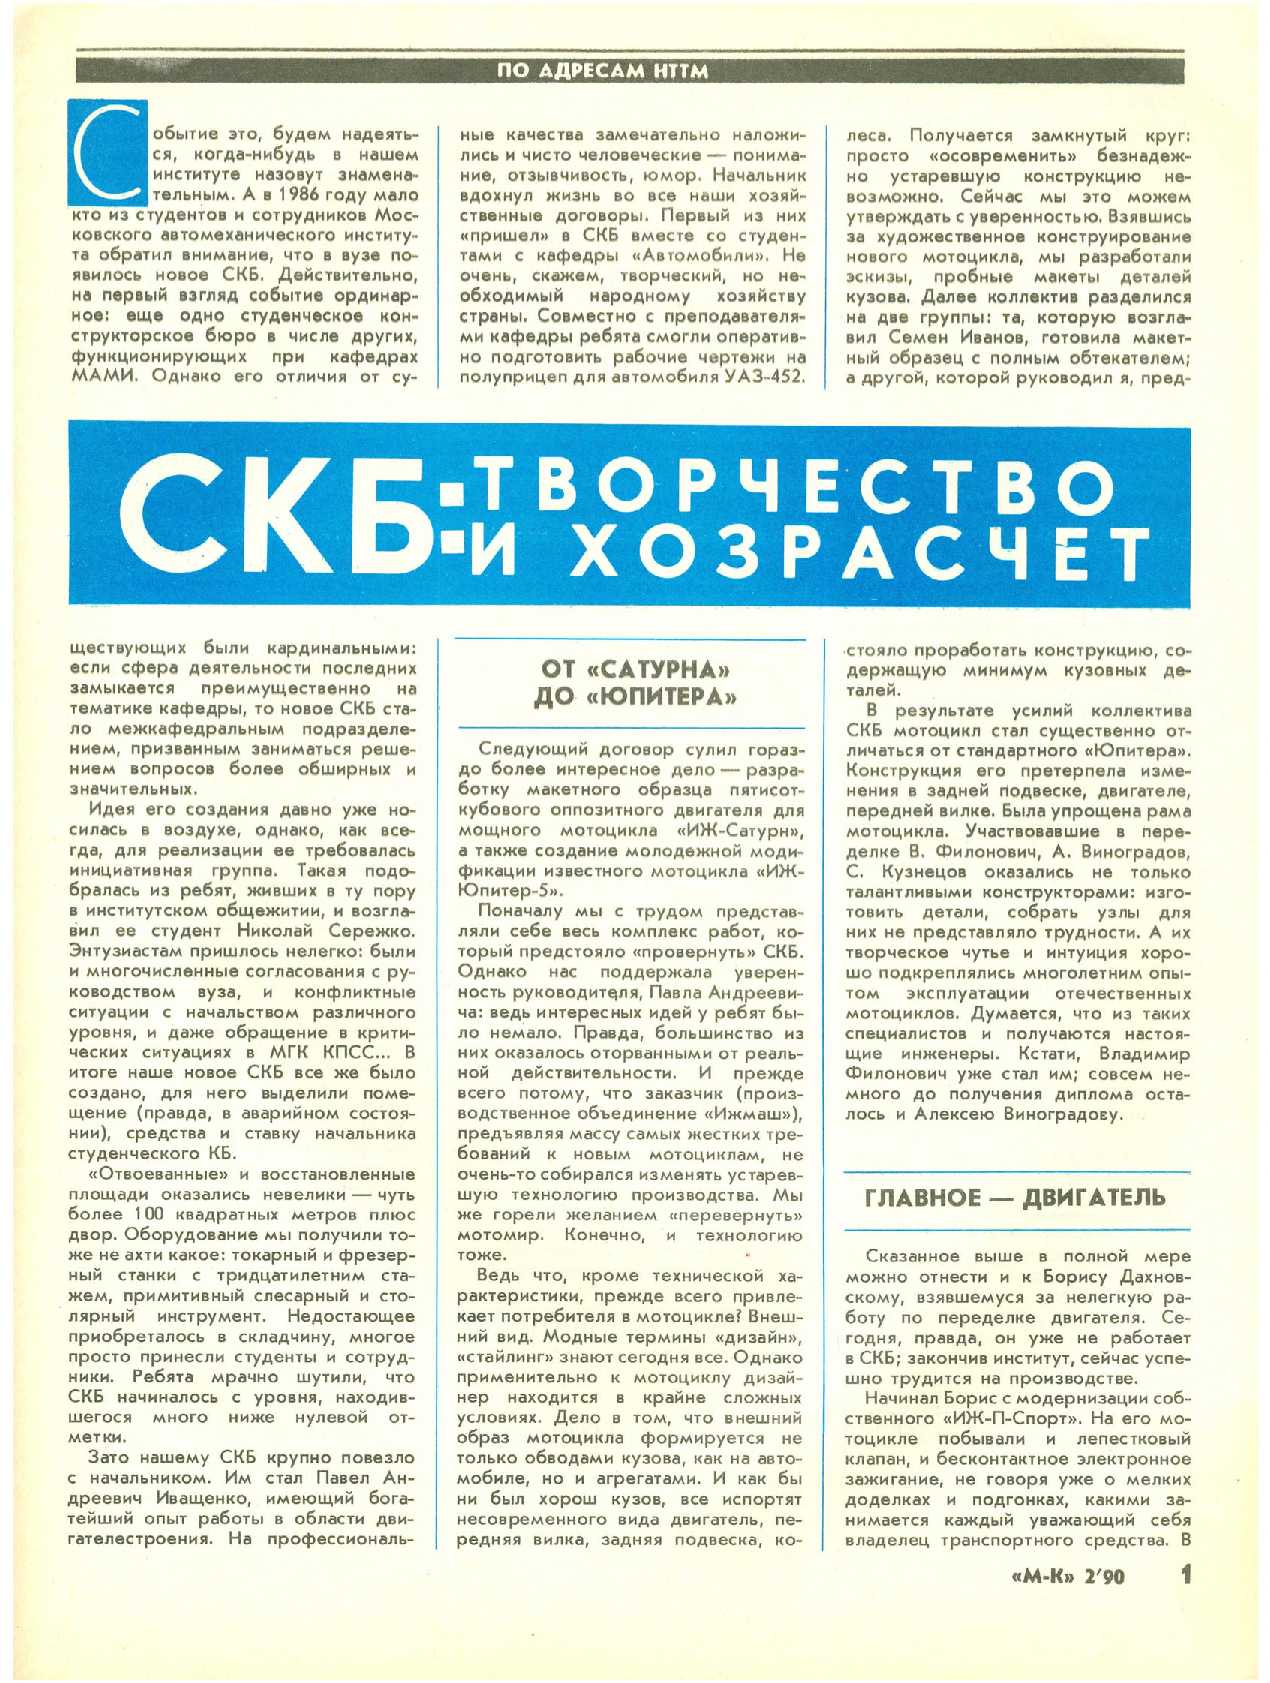 МК 2, 1990, 1 c.